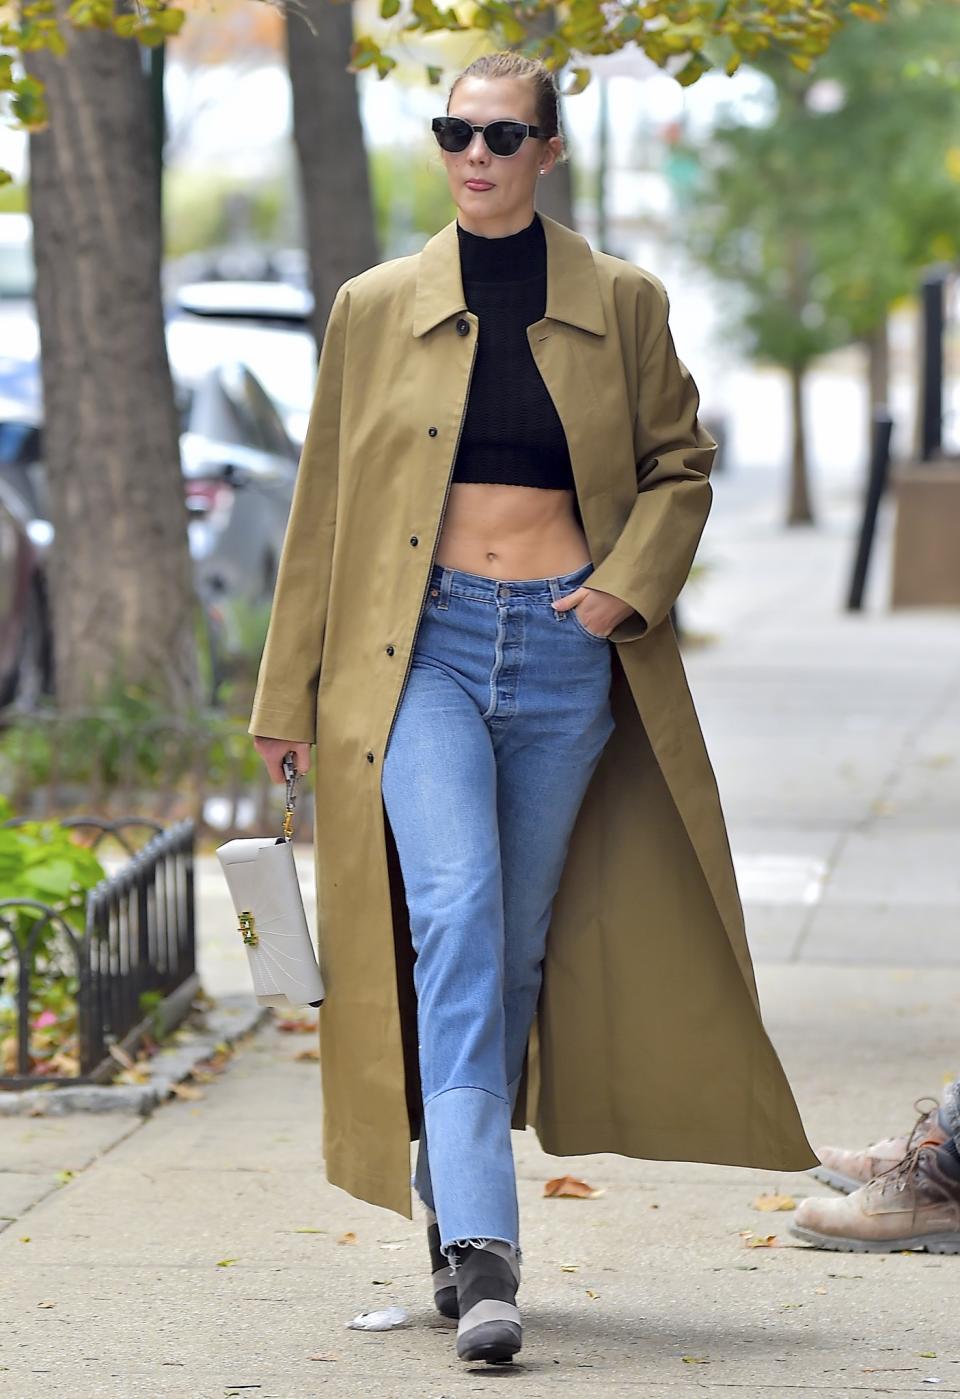 Karlie Kloss stylt den Bridging-Look mit Jeans und Wollmantel. (Bild: Getty Images)